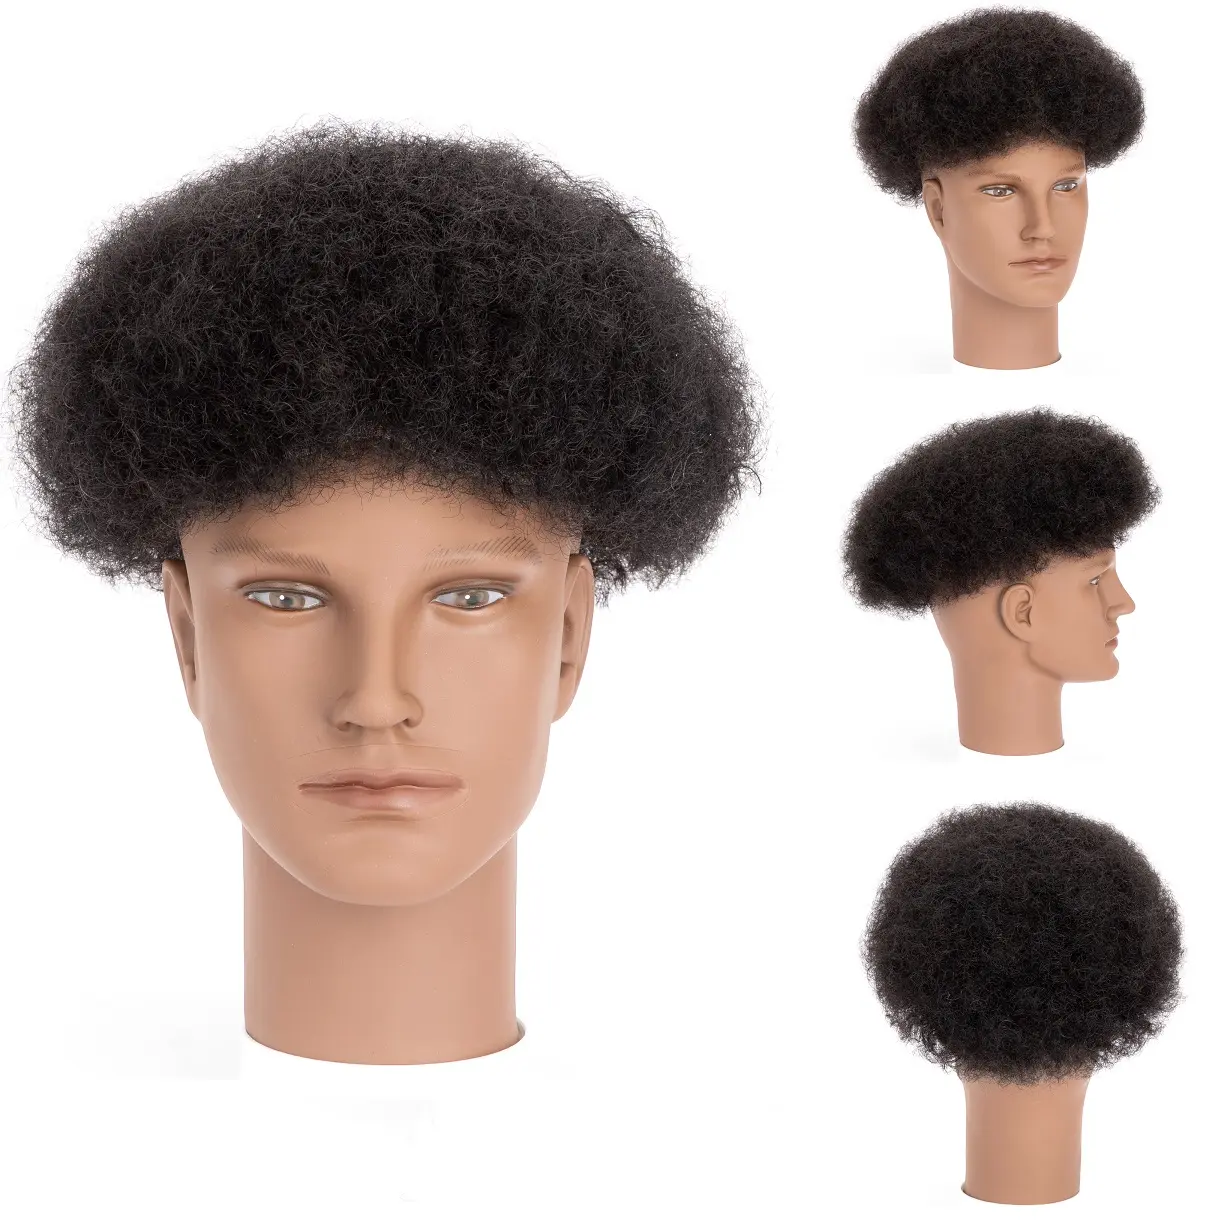 BLT vendita calda 4mm indiano capelli umani sostituzione parrucche da uomo 8*10 Afro pieno pizzo Mono capelli crespi Toupees per uomini neri